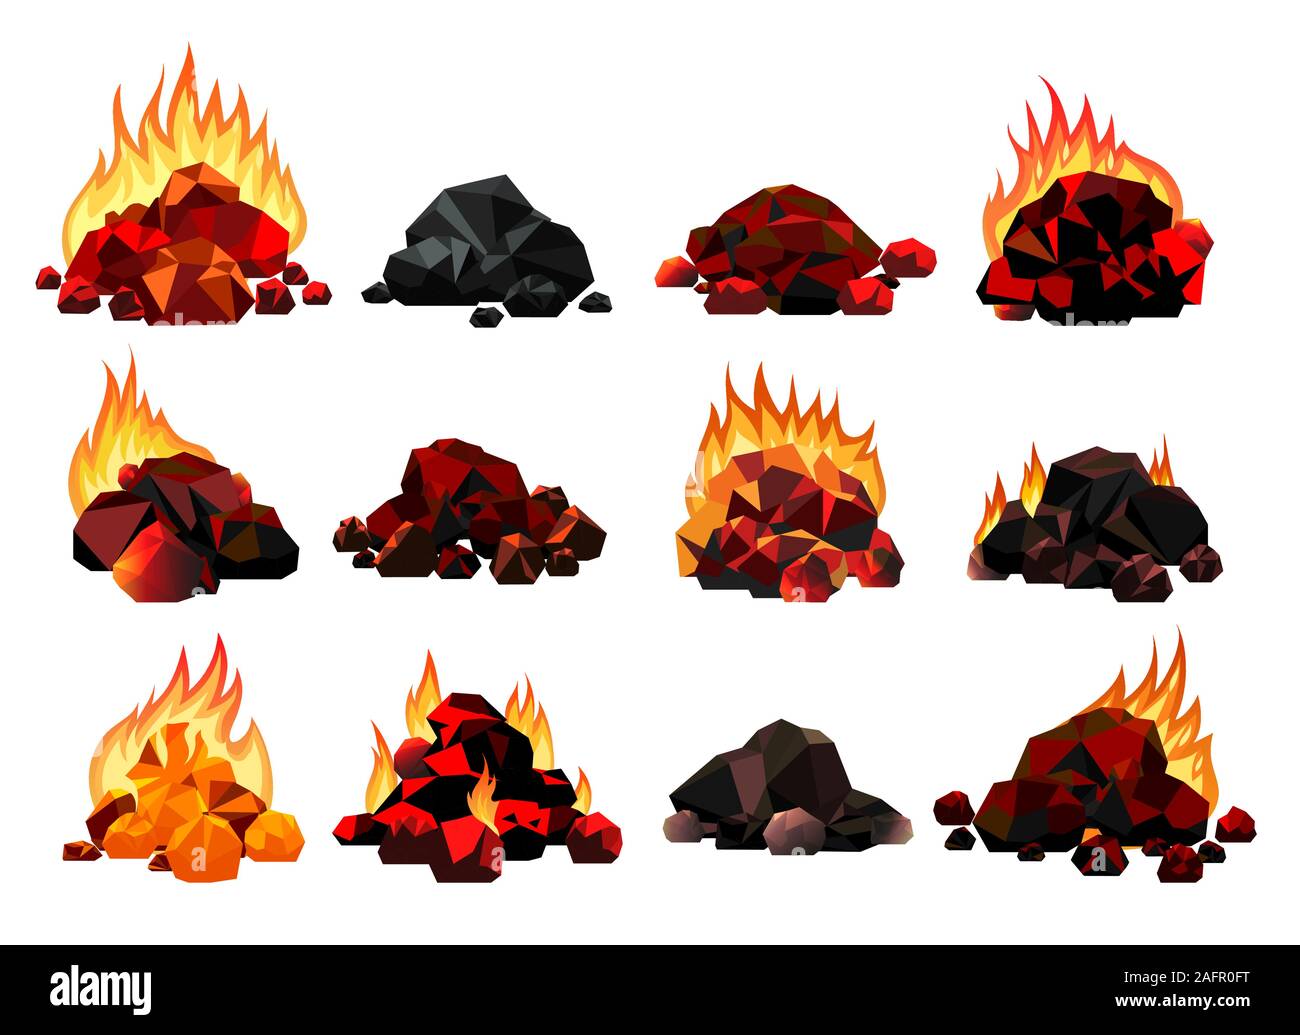 Burning coal set Stock Vector